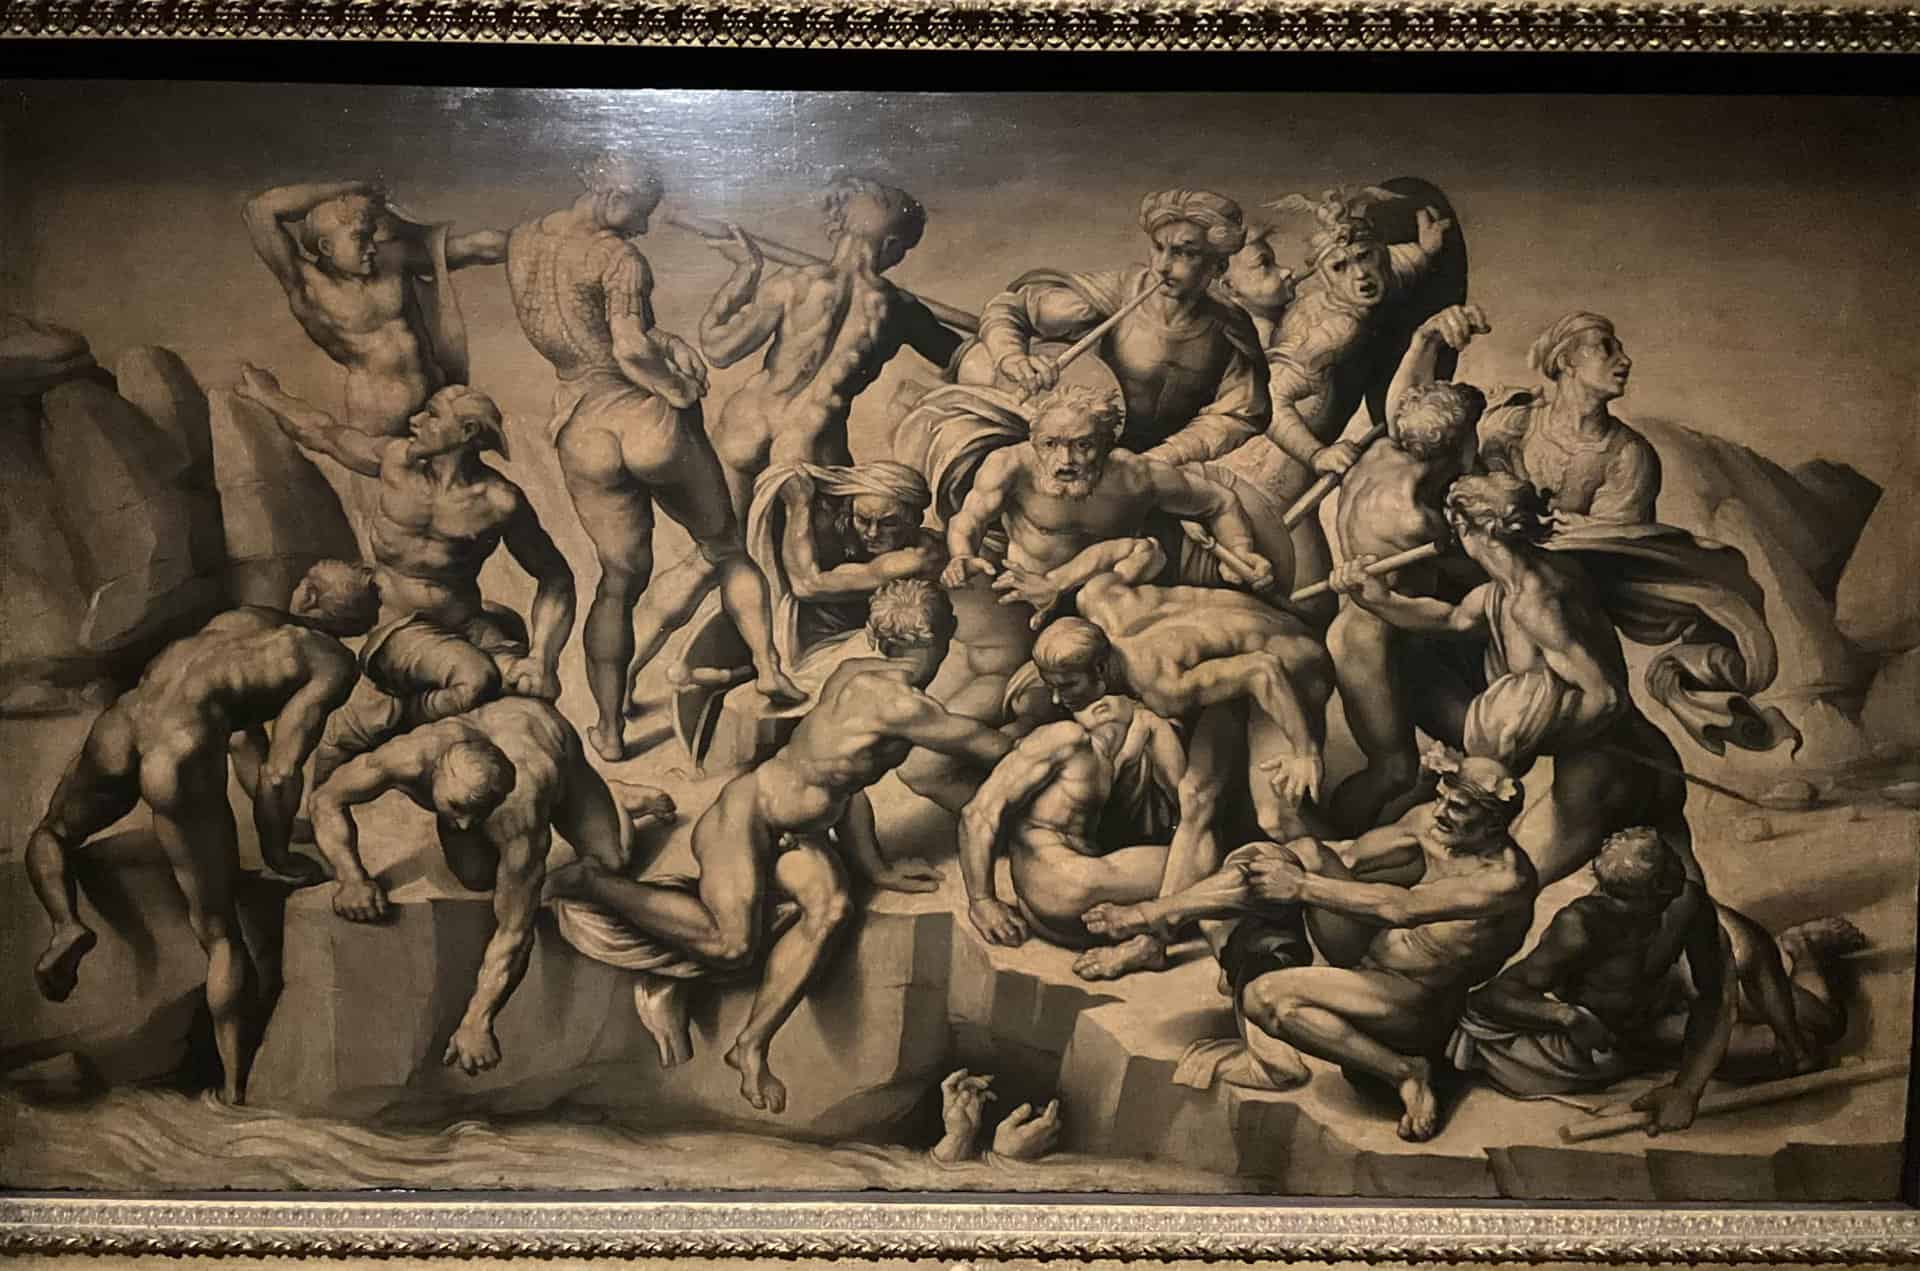 Бастиано да Сангалло, копия фрески Микеланджело "Битва при Кассано", 1542, фрагмент. Фото Юлии Абрамовой, Вена, 2022